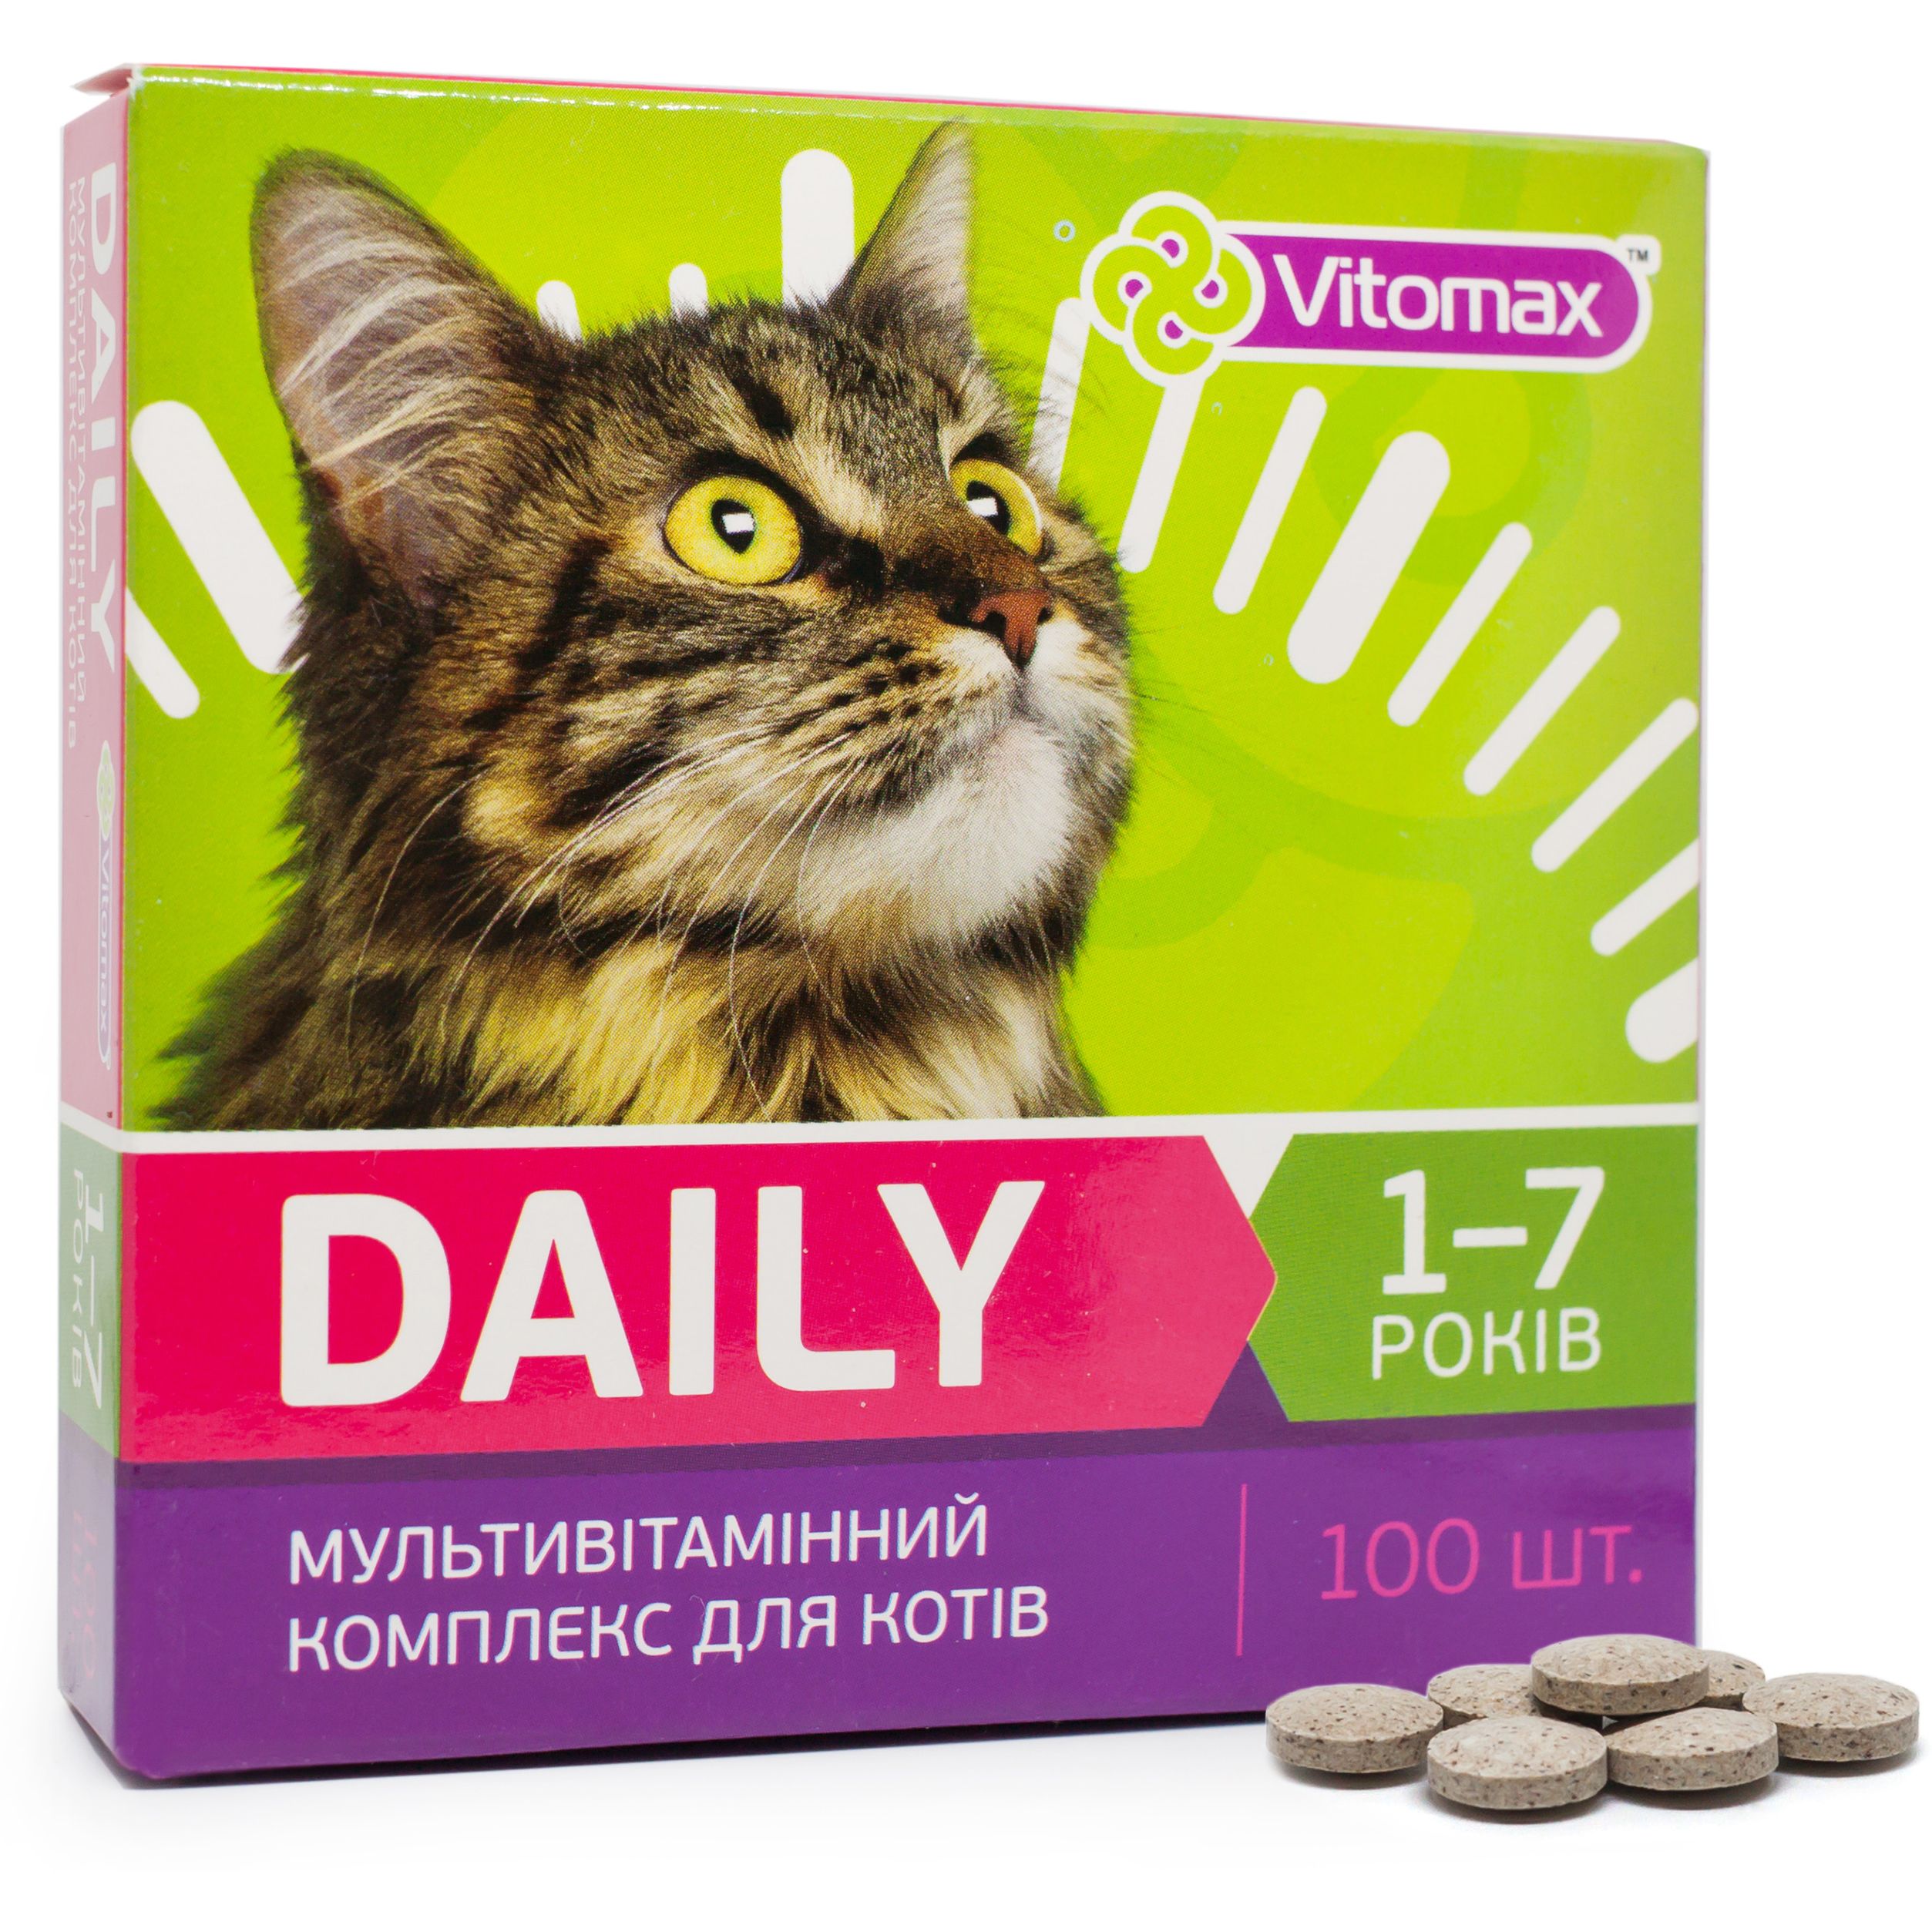 Мультивітамінний комплекс Vitomax Daily для котів 1-7 років, 100 таблеток - фото 2